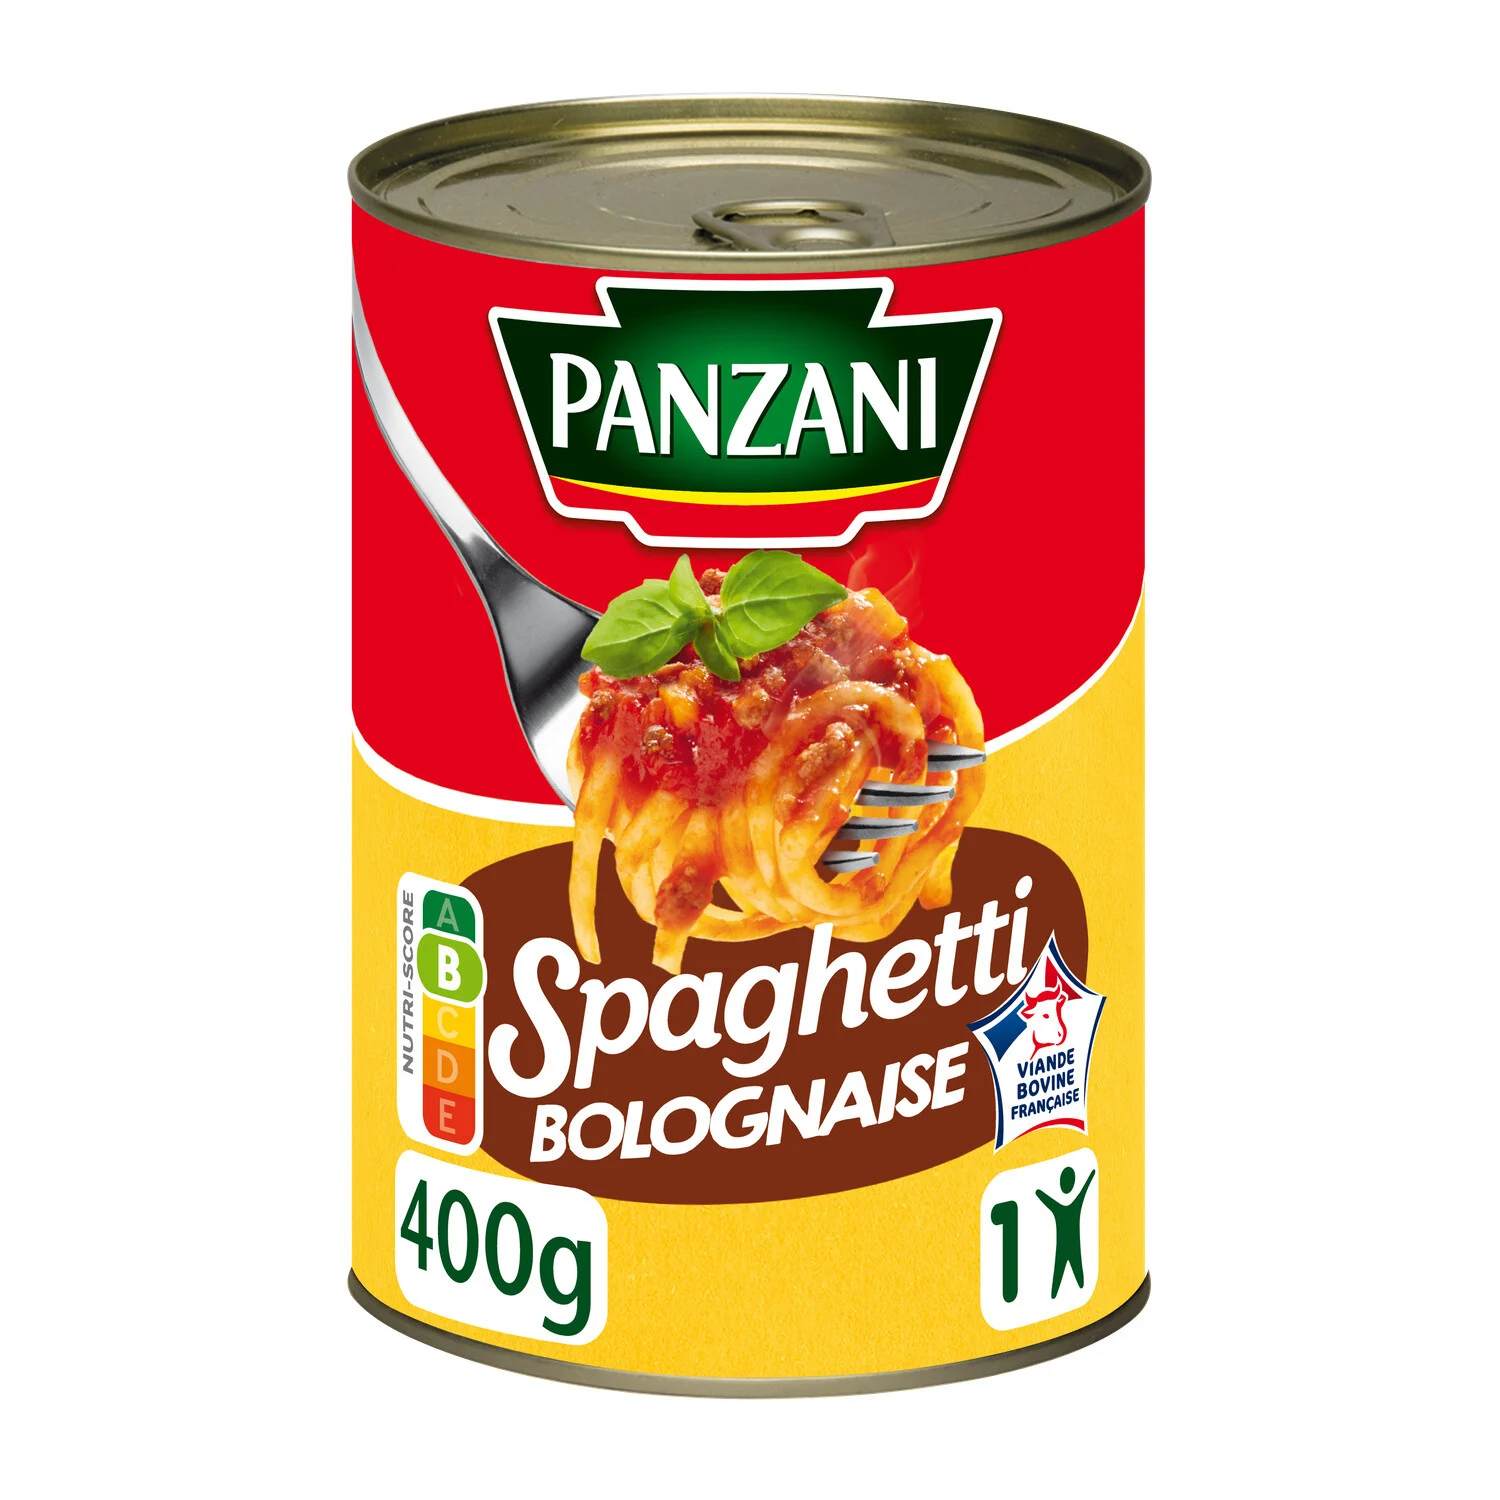 1 2 スパゲティボロネーゼパン